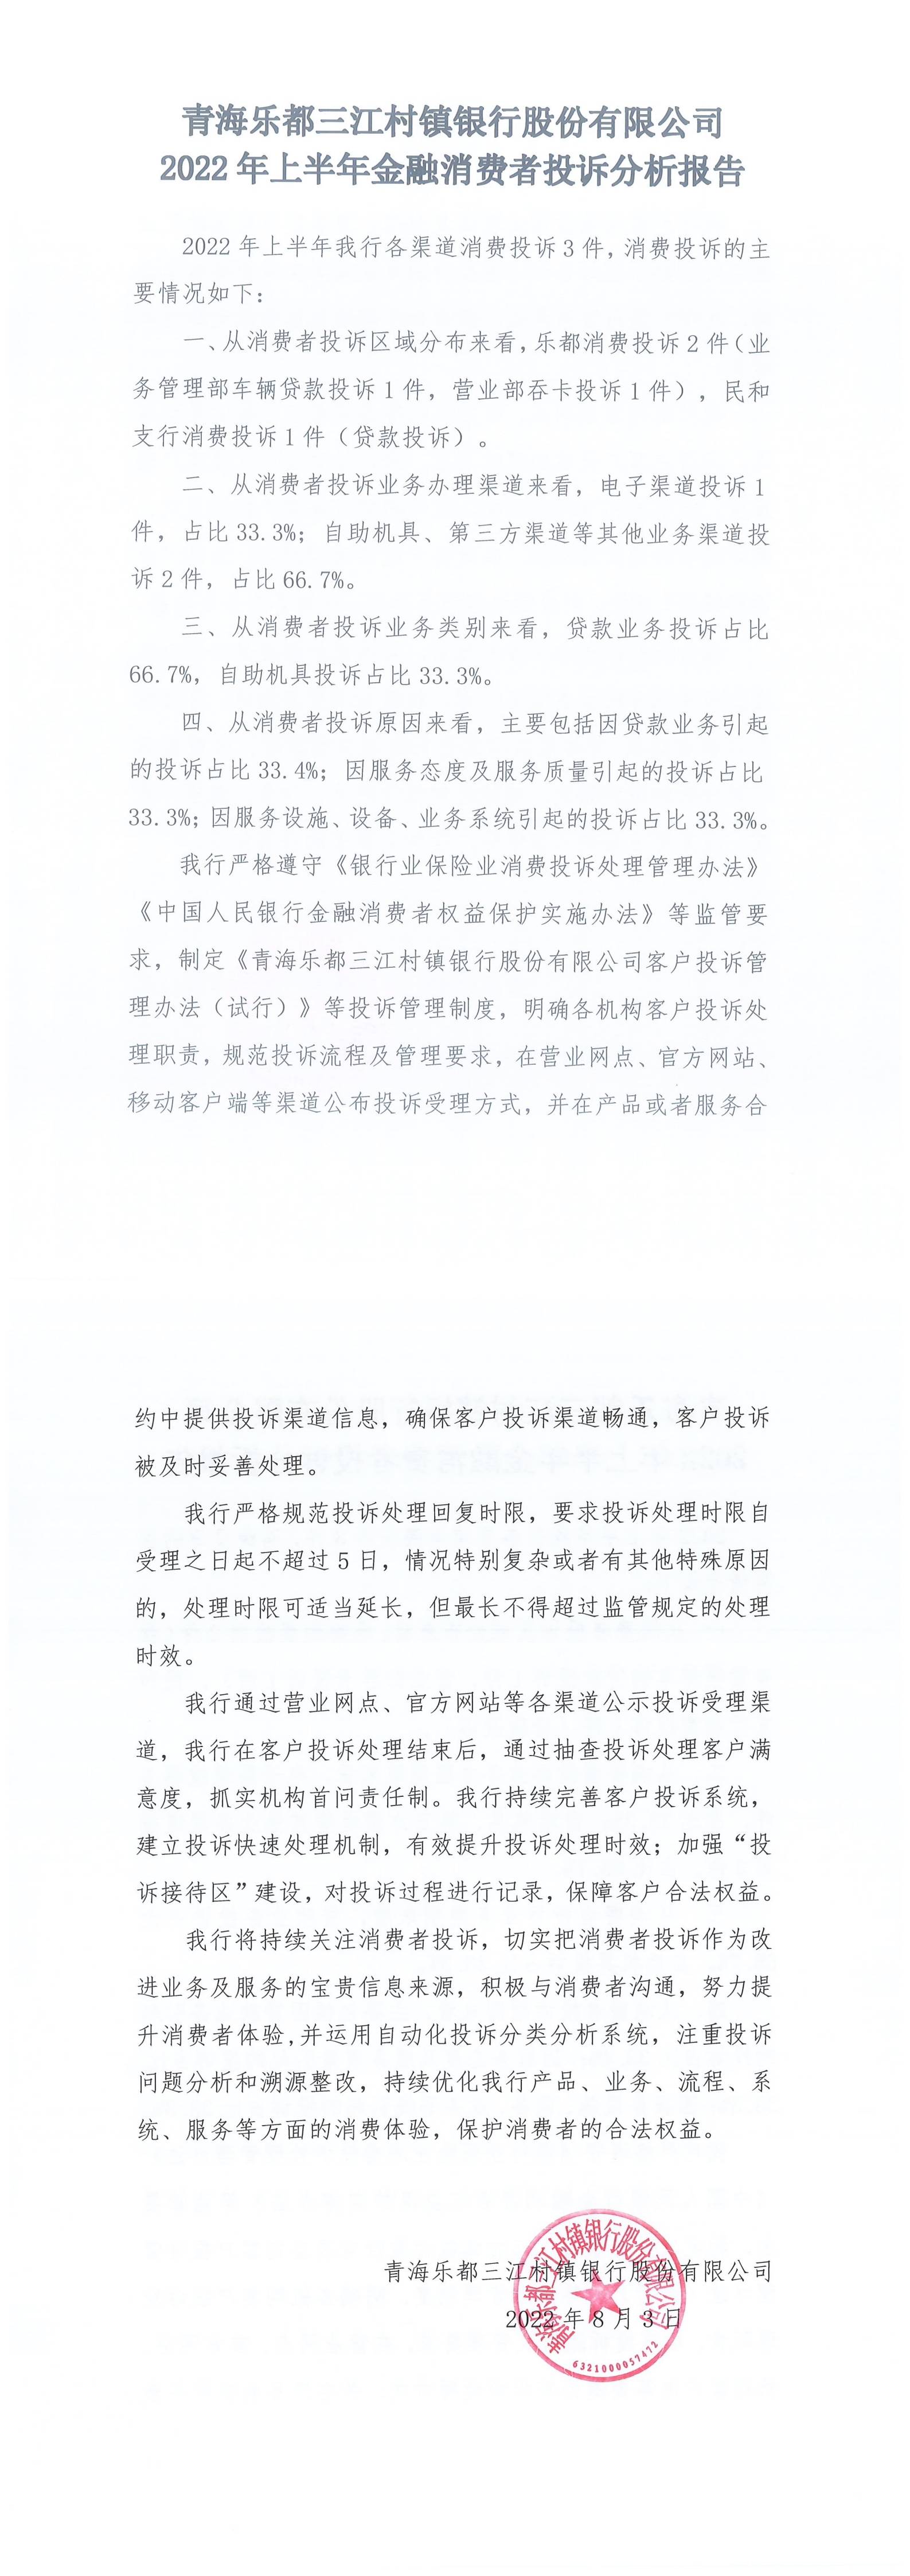 海乐都三江存在银行股份有限公司2022年上半年金融消费者投诉分析报告_00(1)